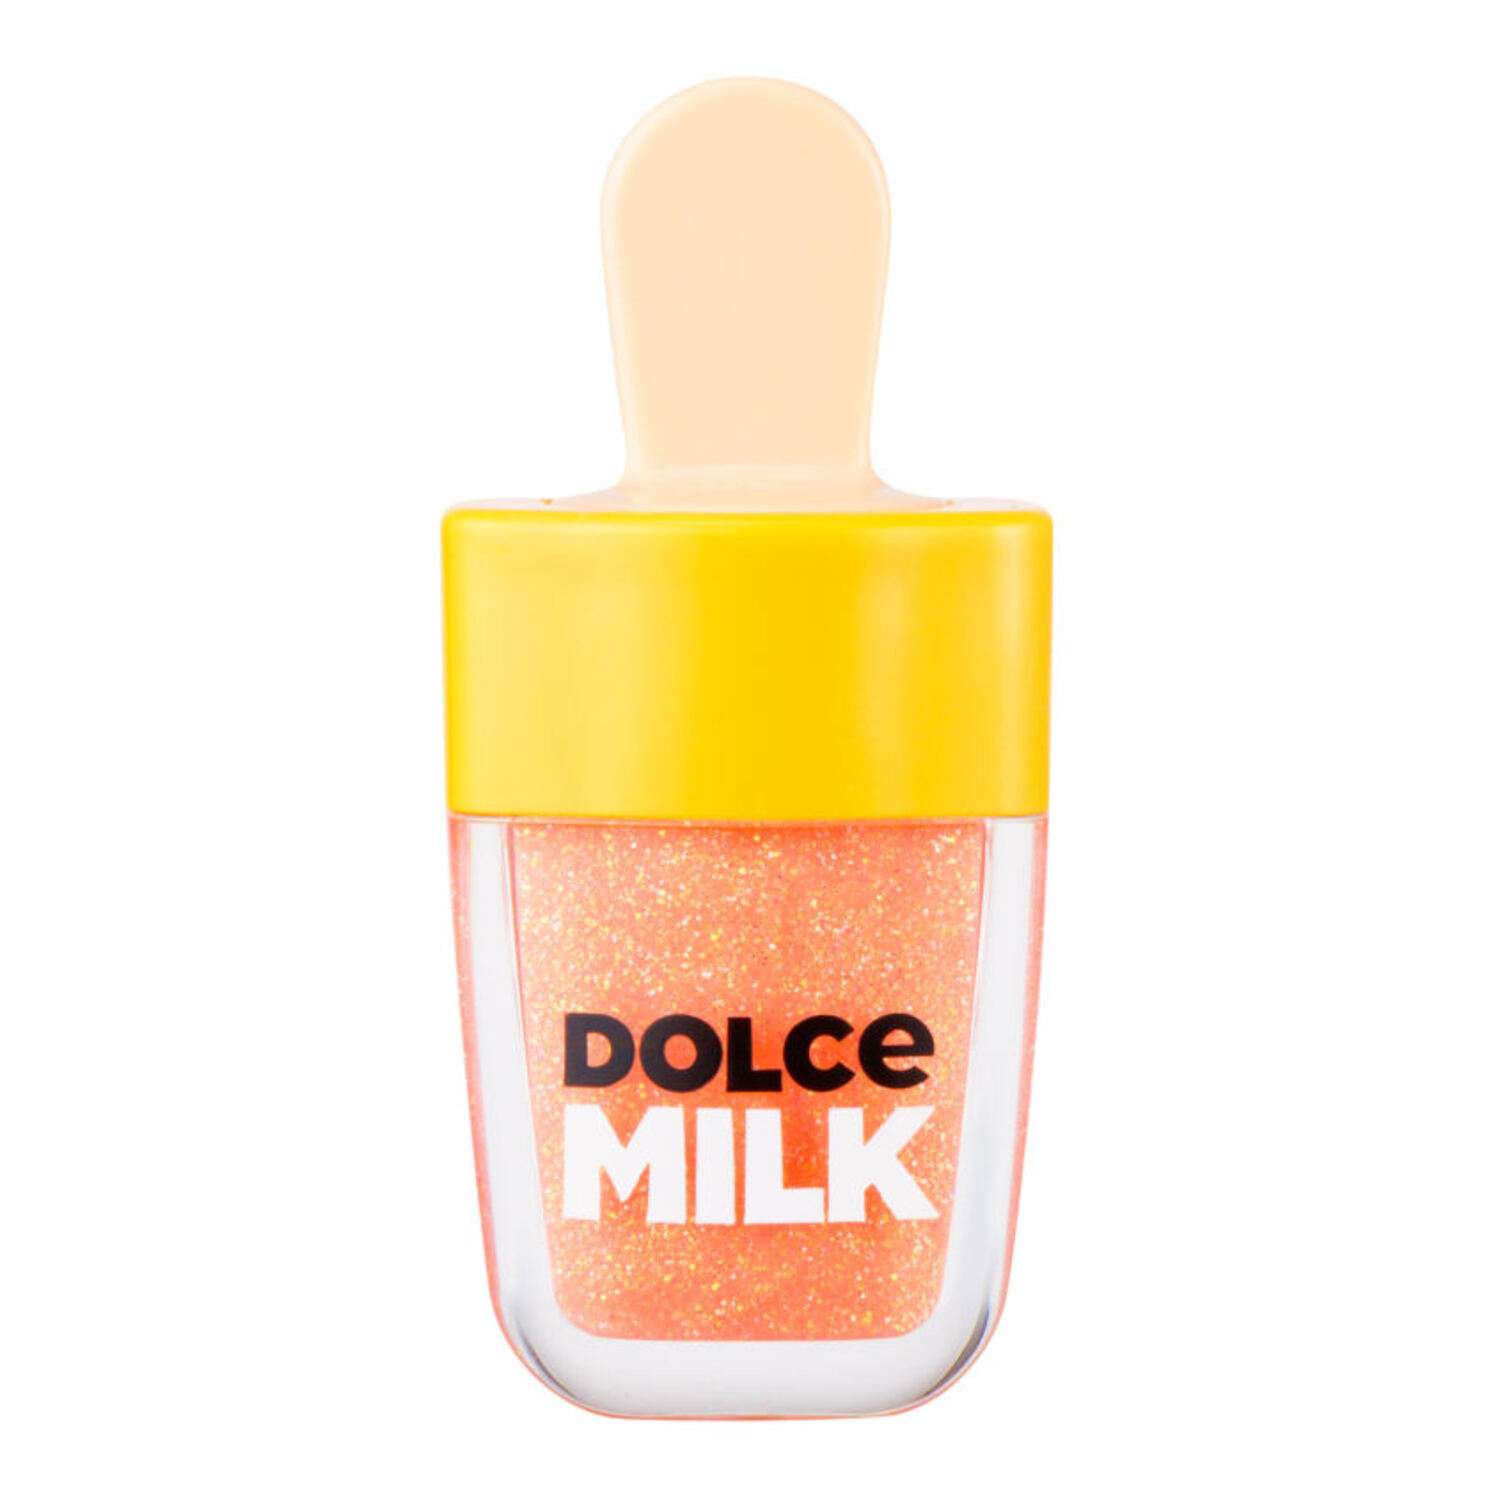 Блеск для губ Dolce milk Gelato Гоу-гоу Манго CLOR49069 - фото 3